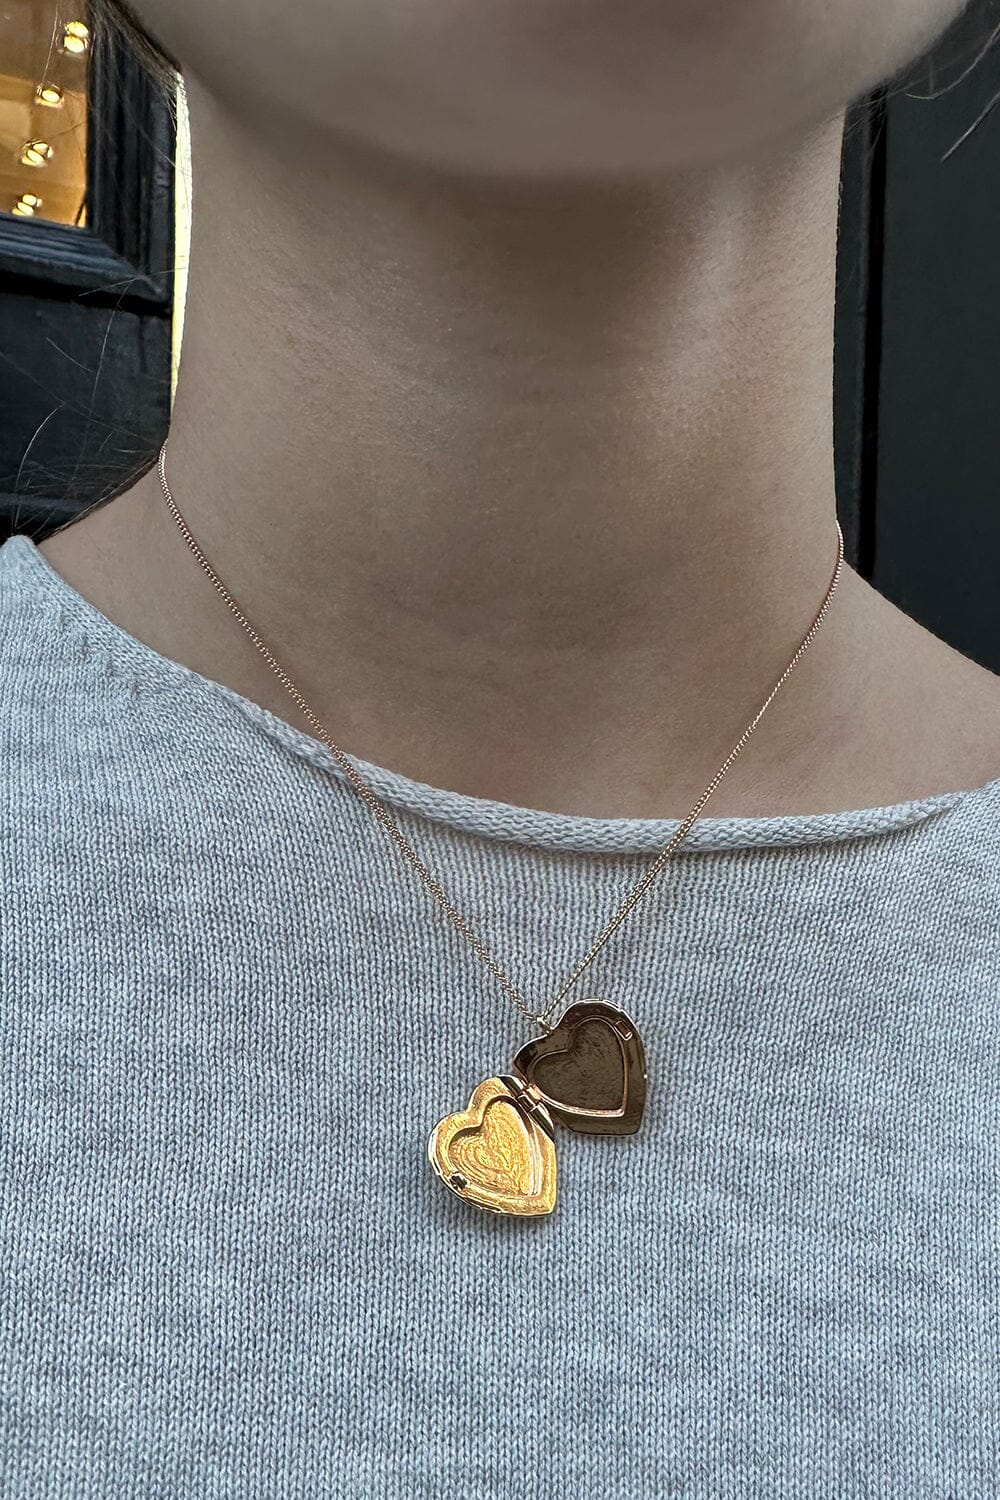 Accessories | Heart pendant necklace, Necklace, Heart pendant